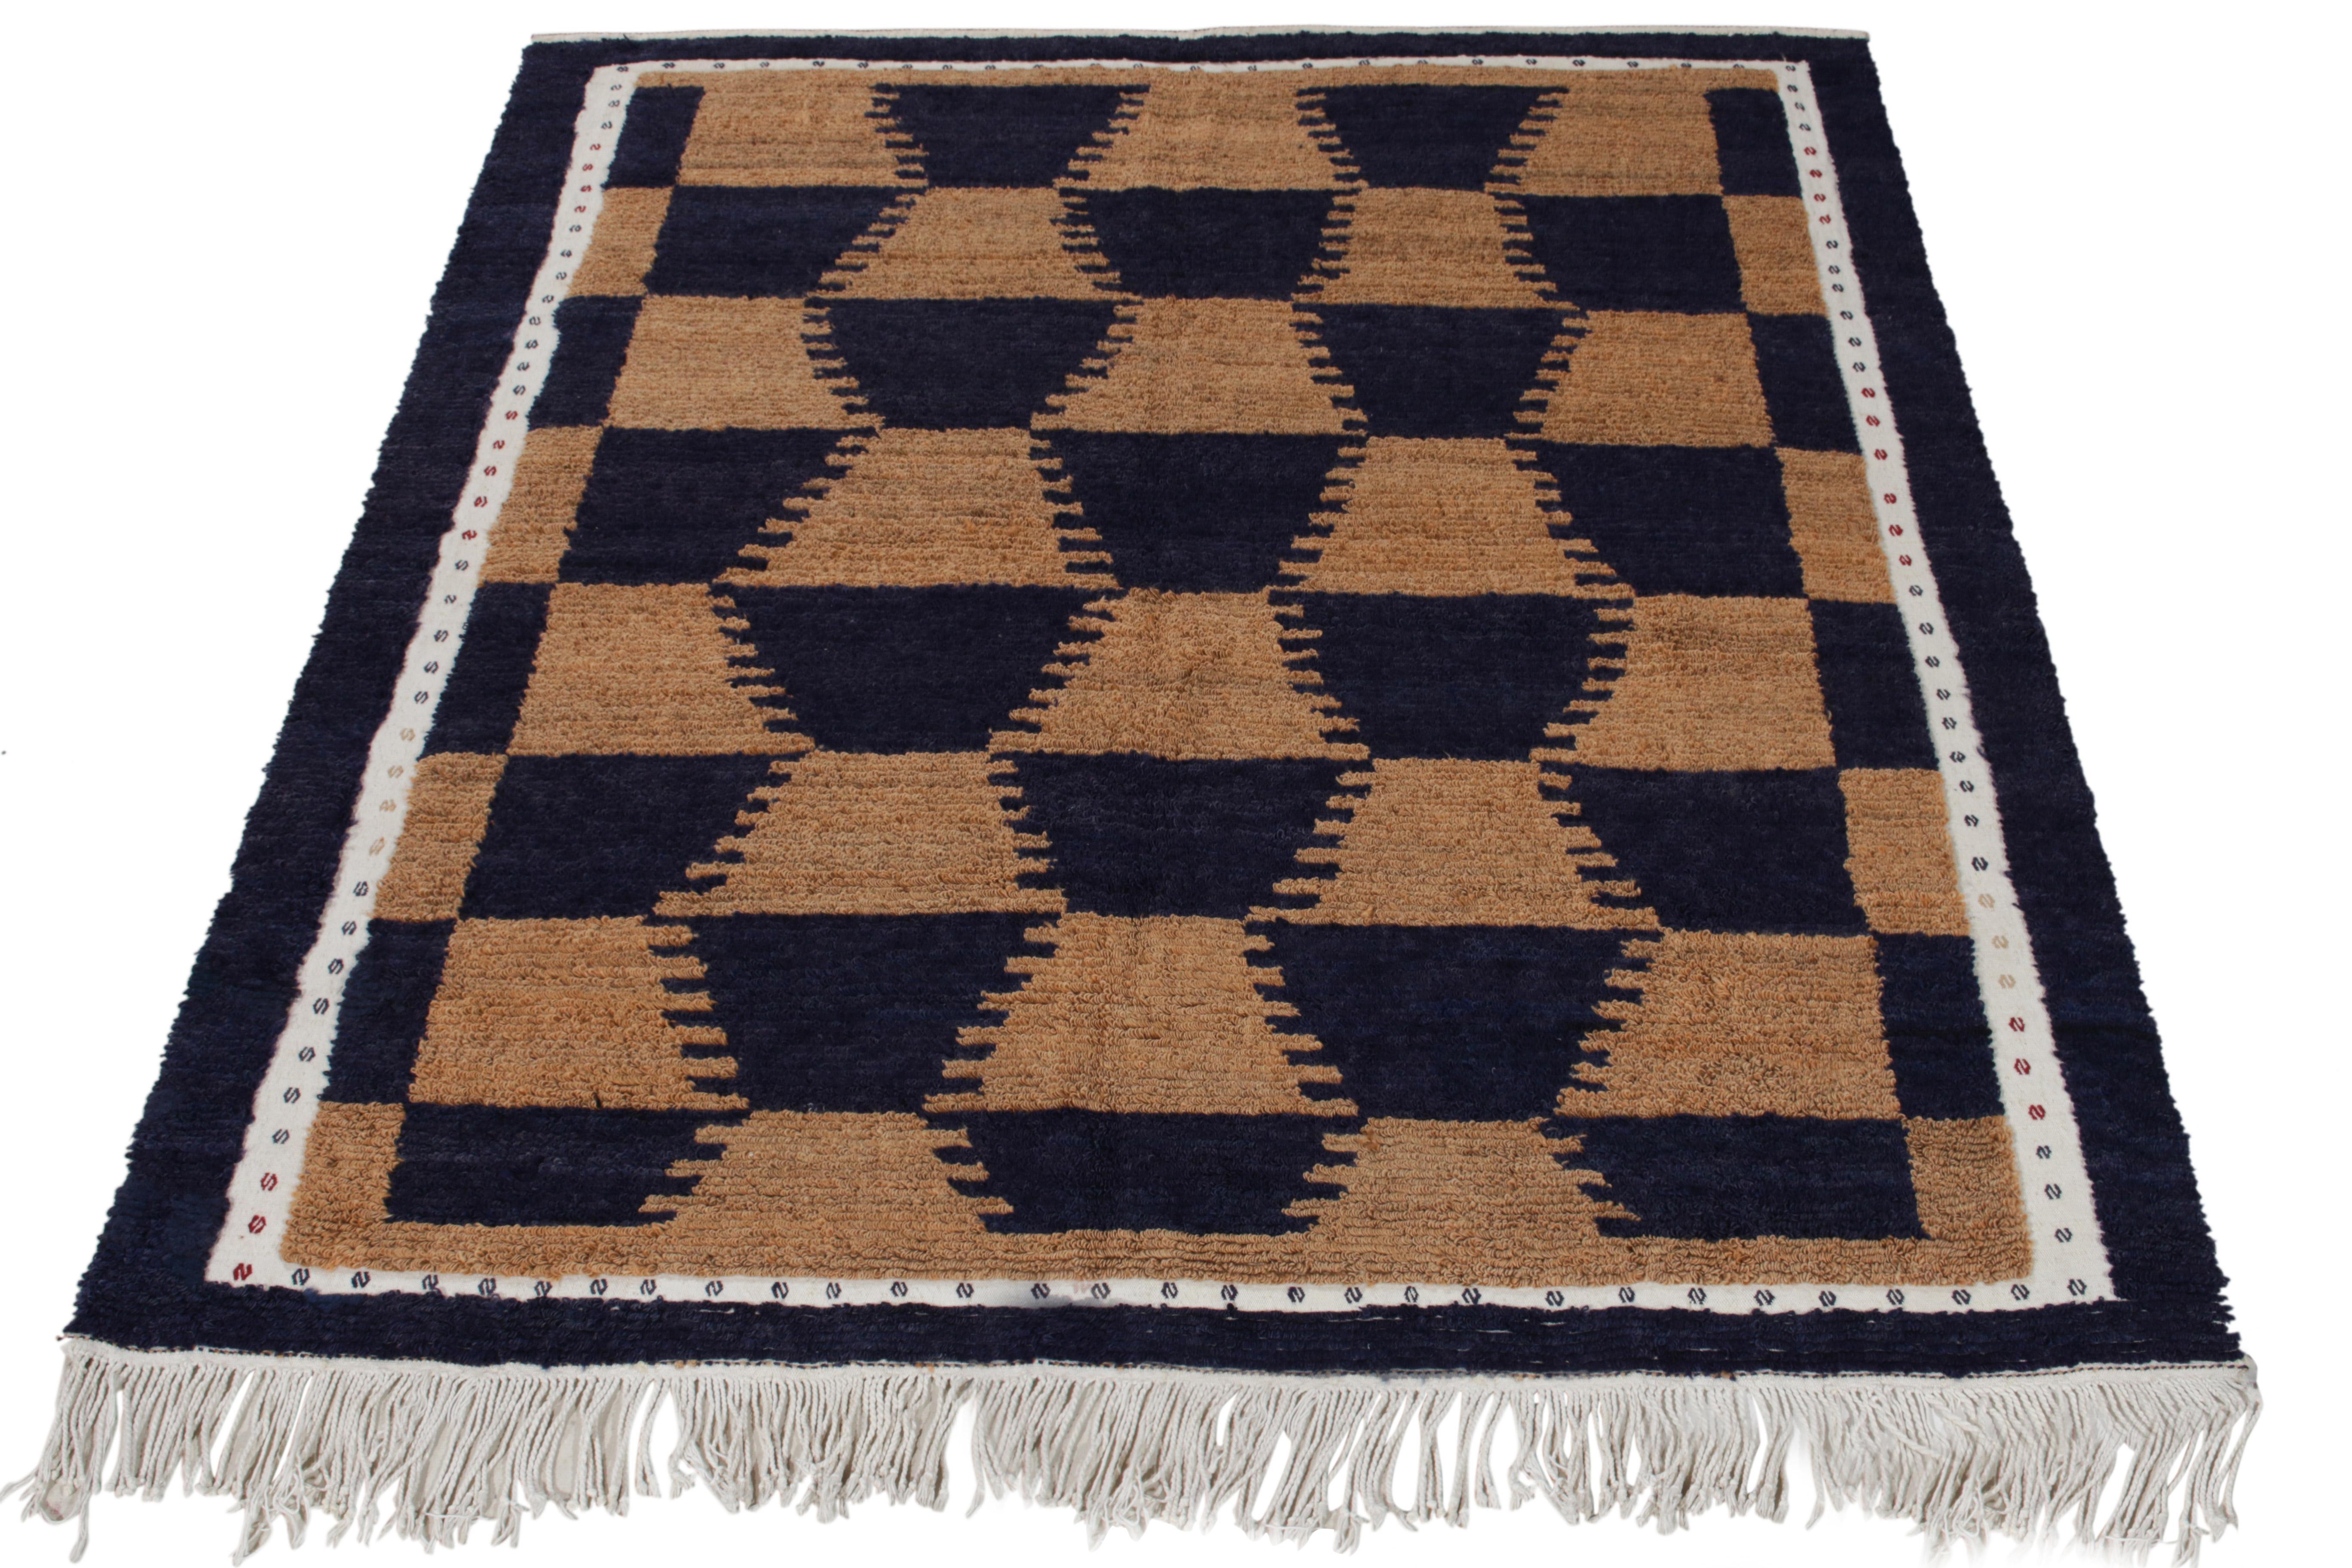 Dieses seltene Paar 6x7 Tulu-Teppiche ist die nächste Ergänzung zu Rug & Kilim's  Antike & Vintage Collection'S. Beide sind aus Wolle handgeknüpft und stammen aus der Türkei (ca. 1950-1960).

Weiter zum Design:  

Beide Stücke zeichnen sich durch